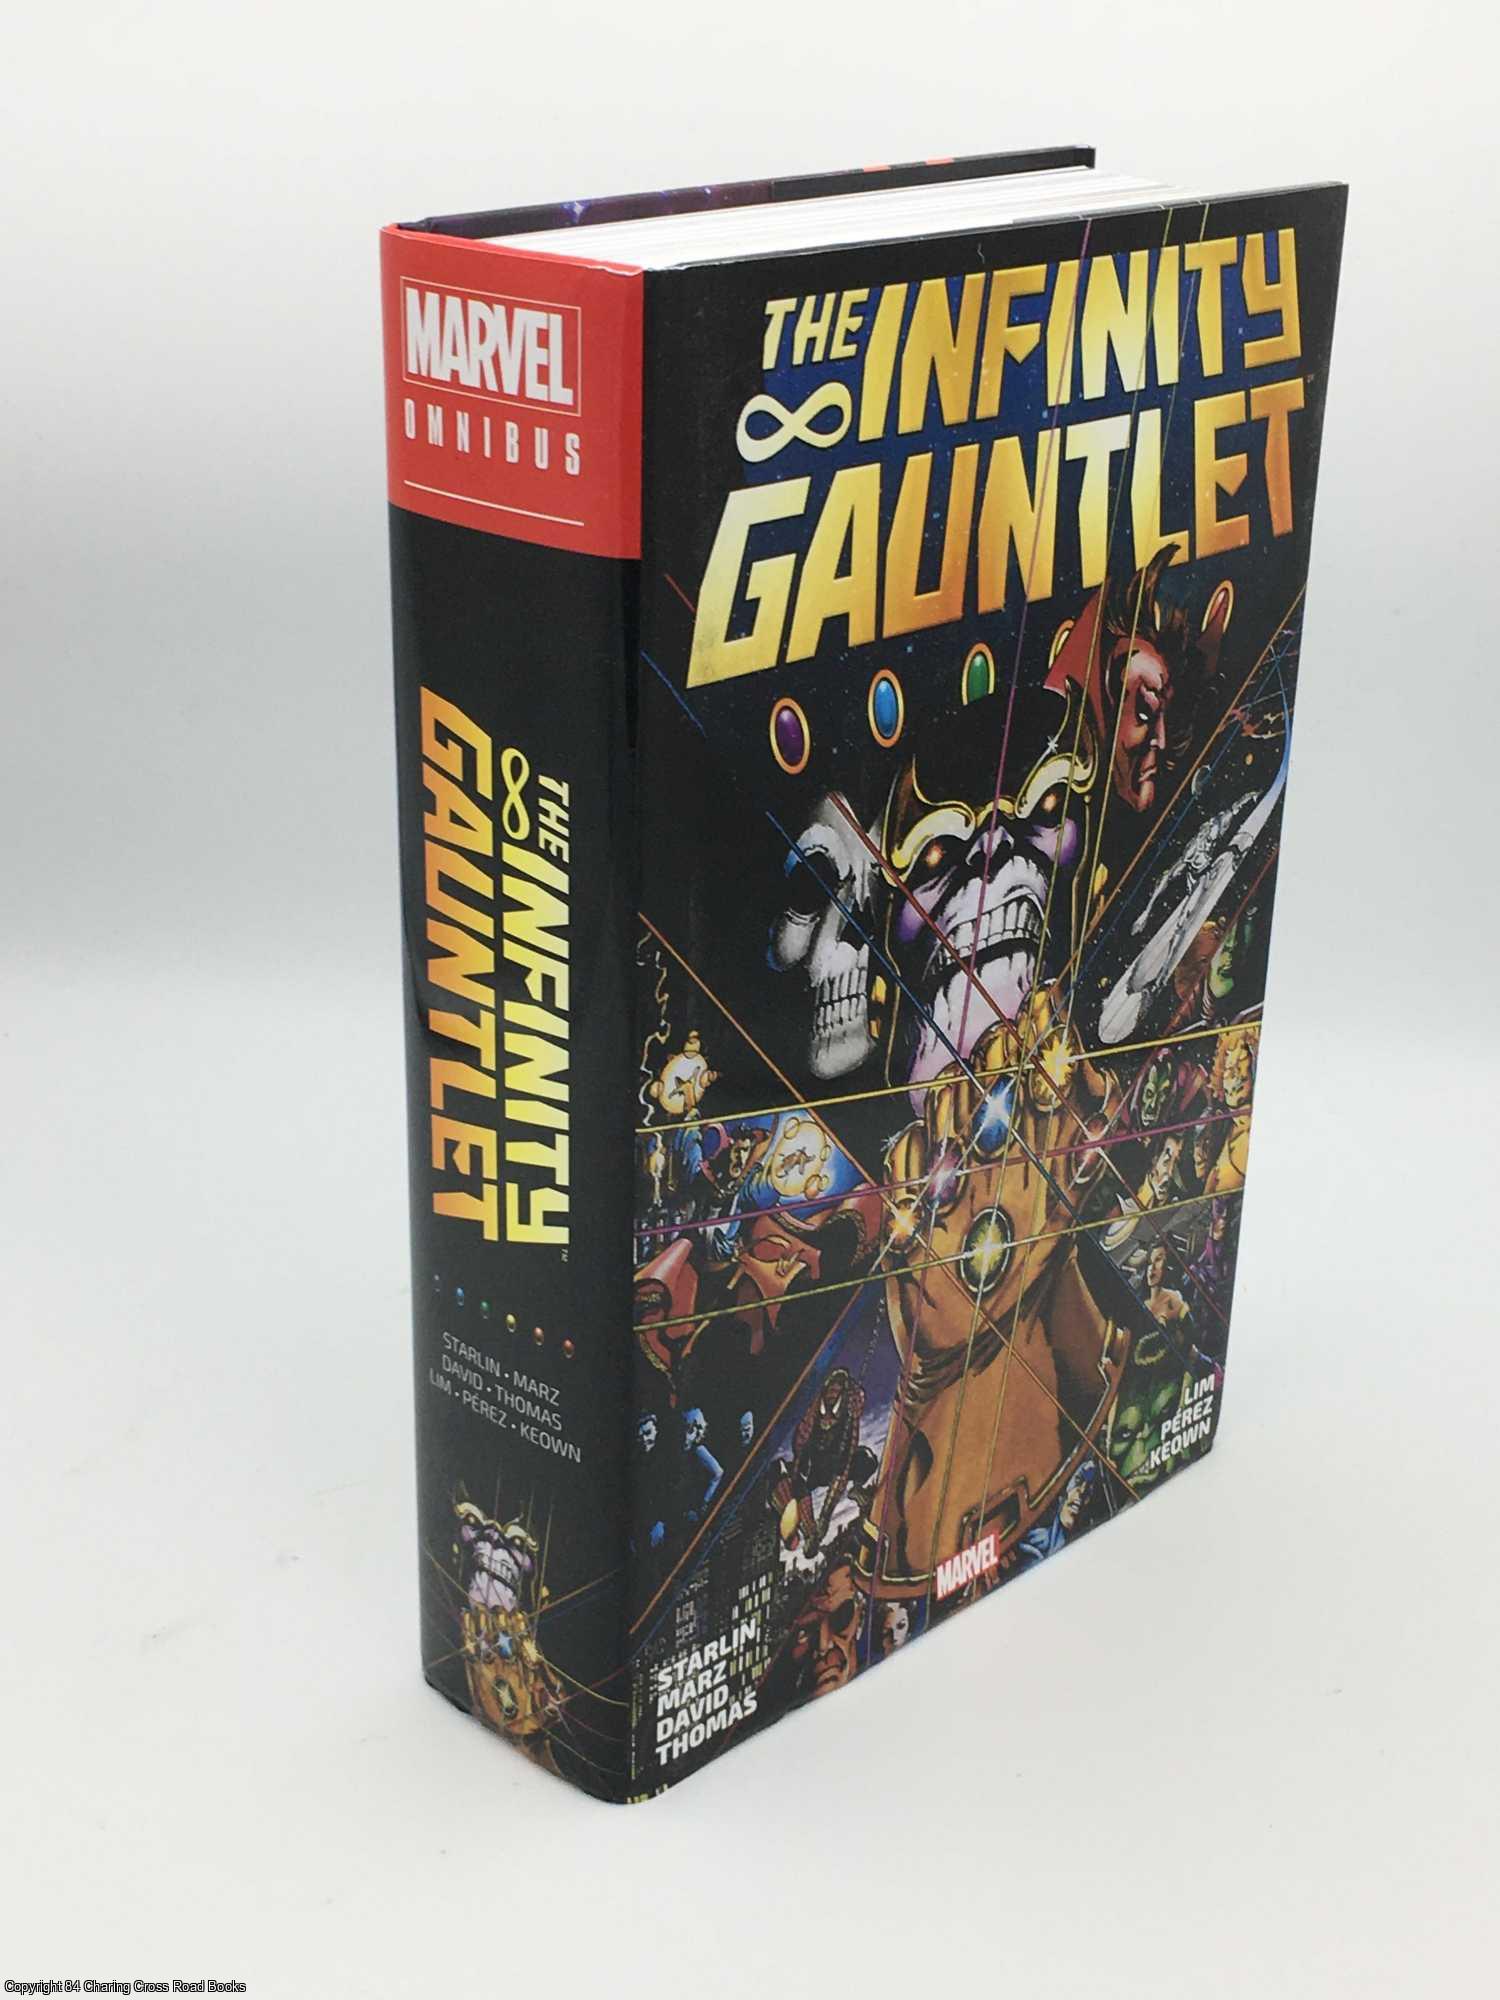 Starlin, Jim - Infinity Gauntlet Omnibus